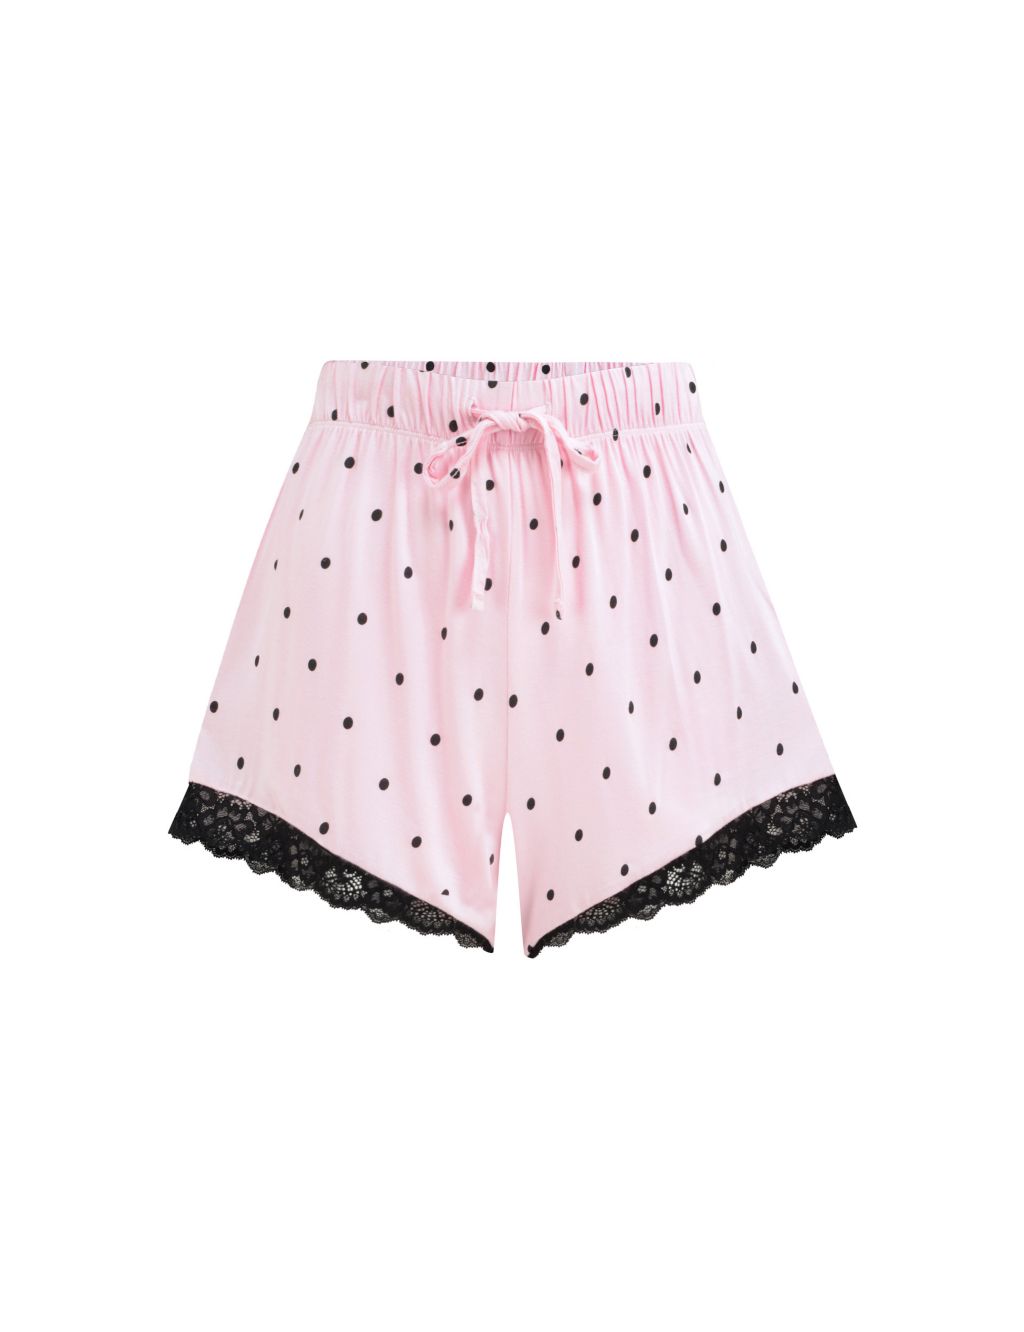 Sofa Loves Polka Dot Lace Trim Pyjama Shorts 1 of 5